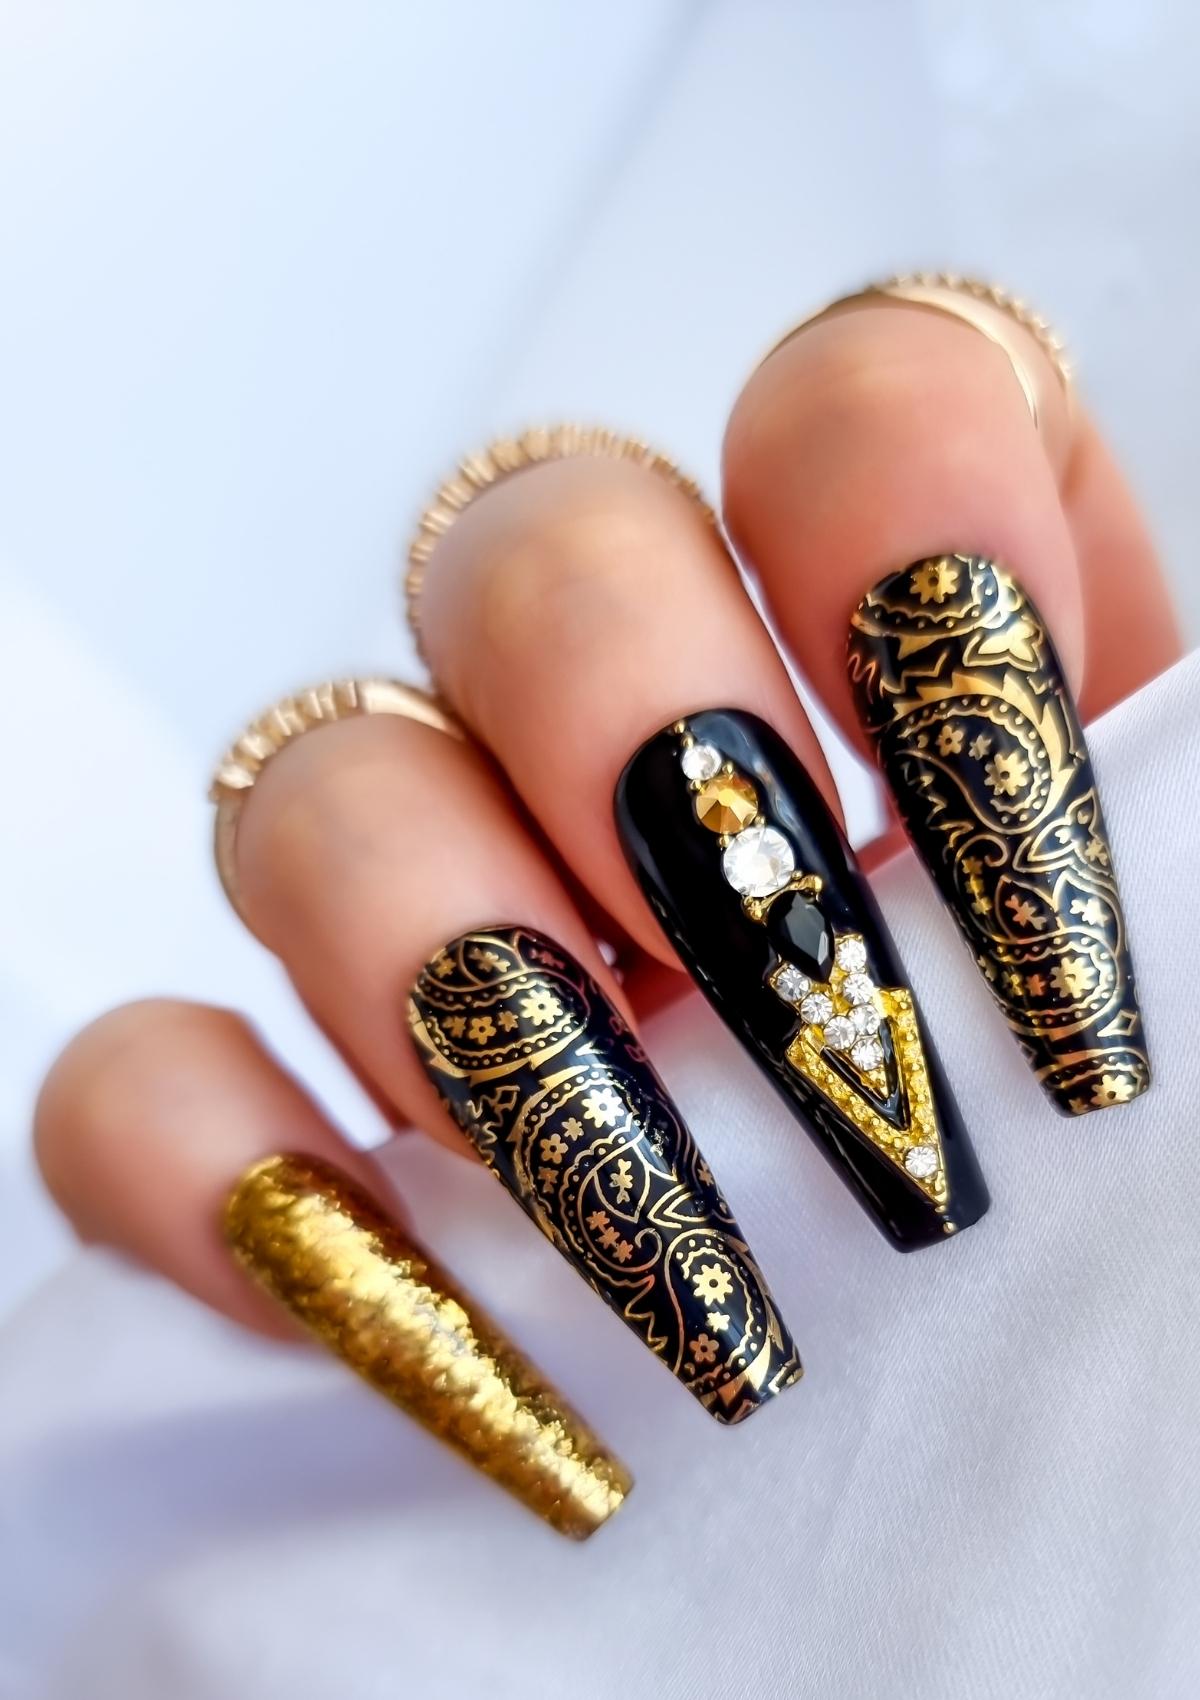 Gold and black nails with gold paisley bandana print 